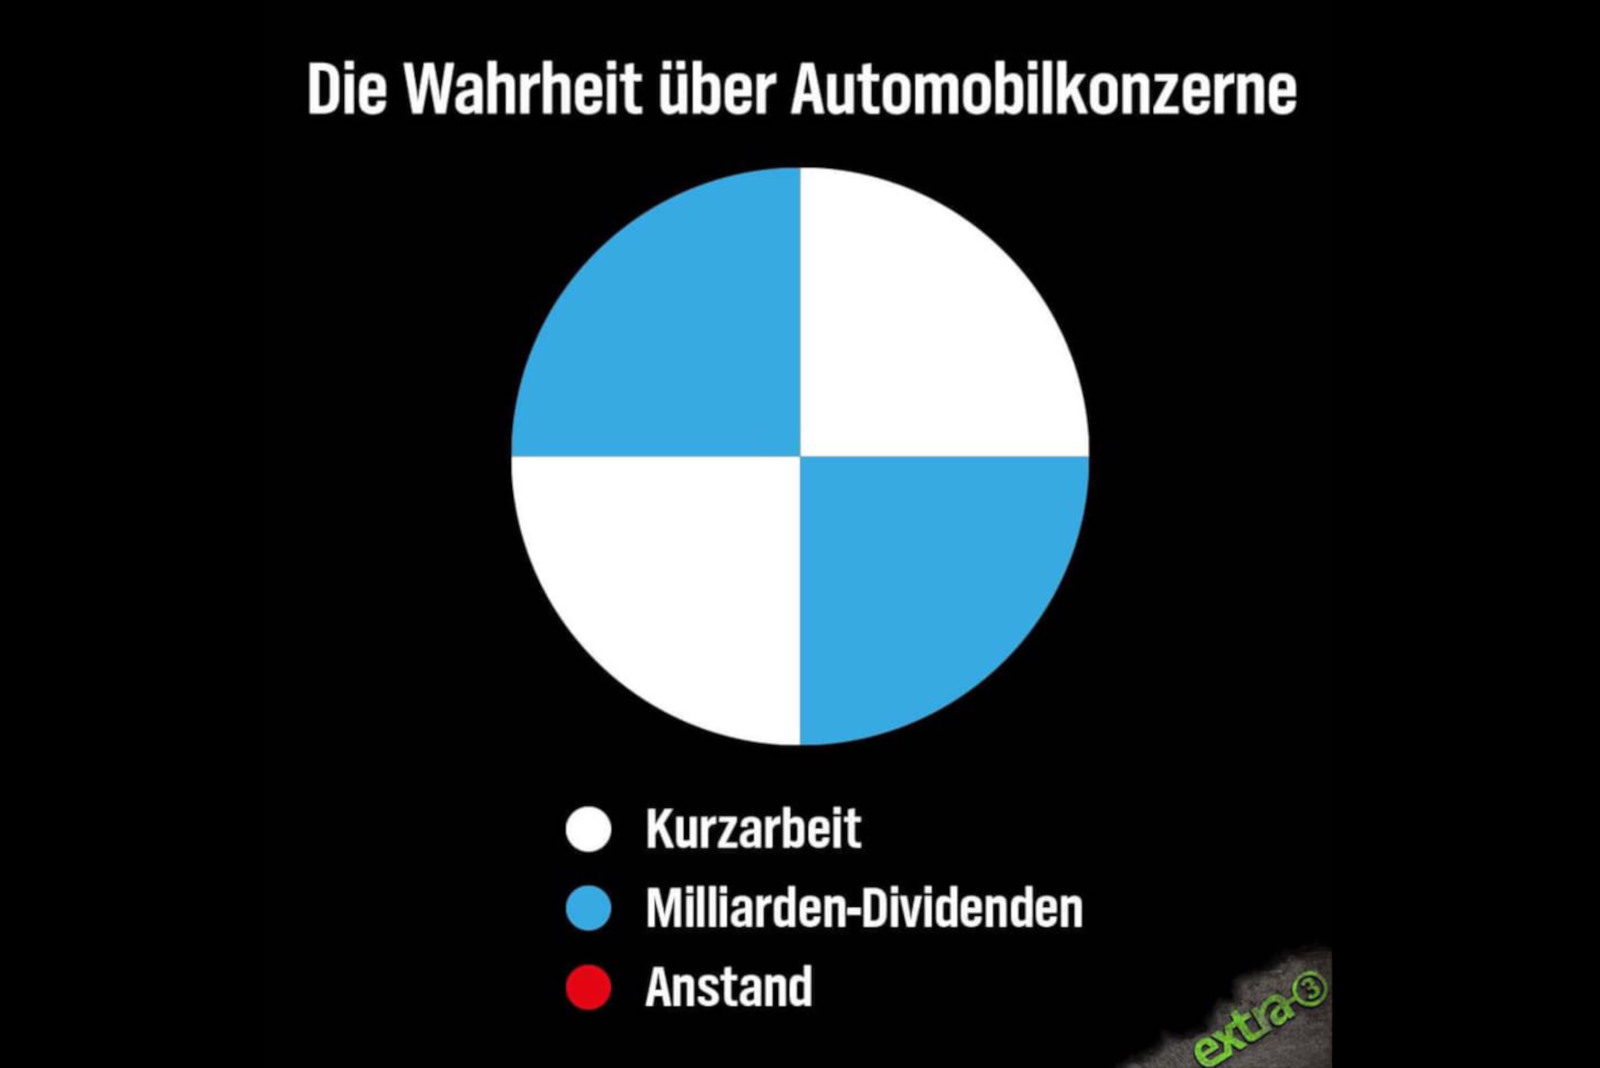 Dividende vs. Kurzarbeit: Kritik an BMW & Co. wird immer lauter